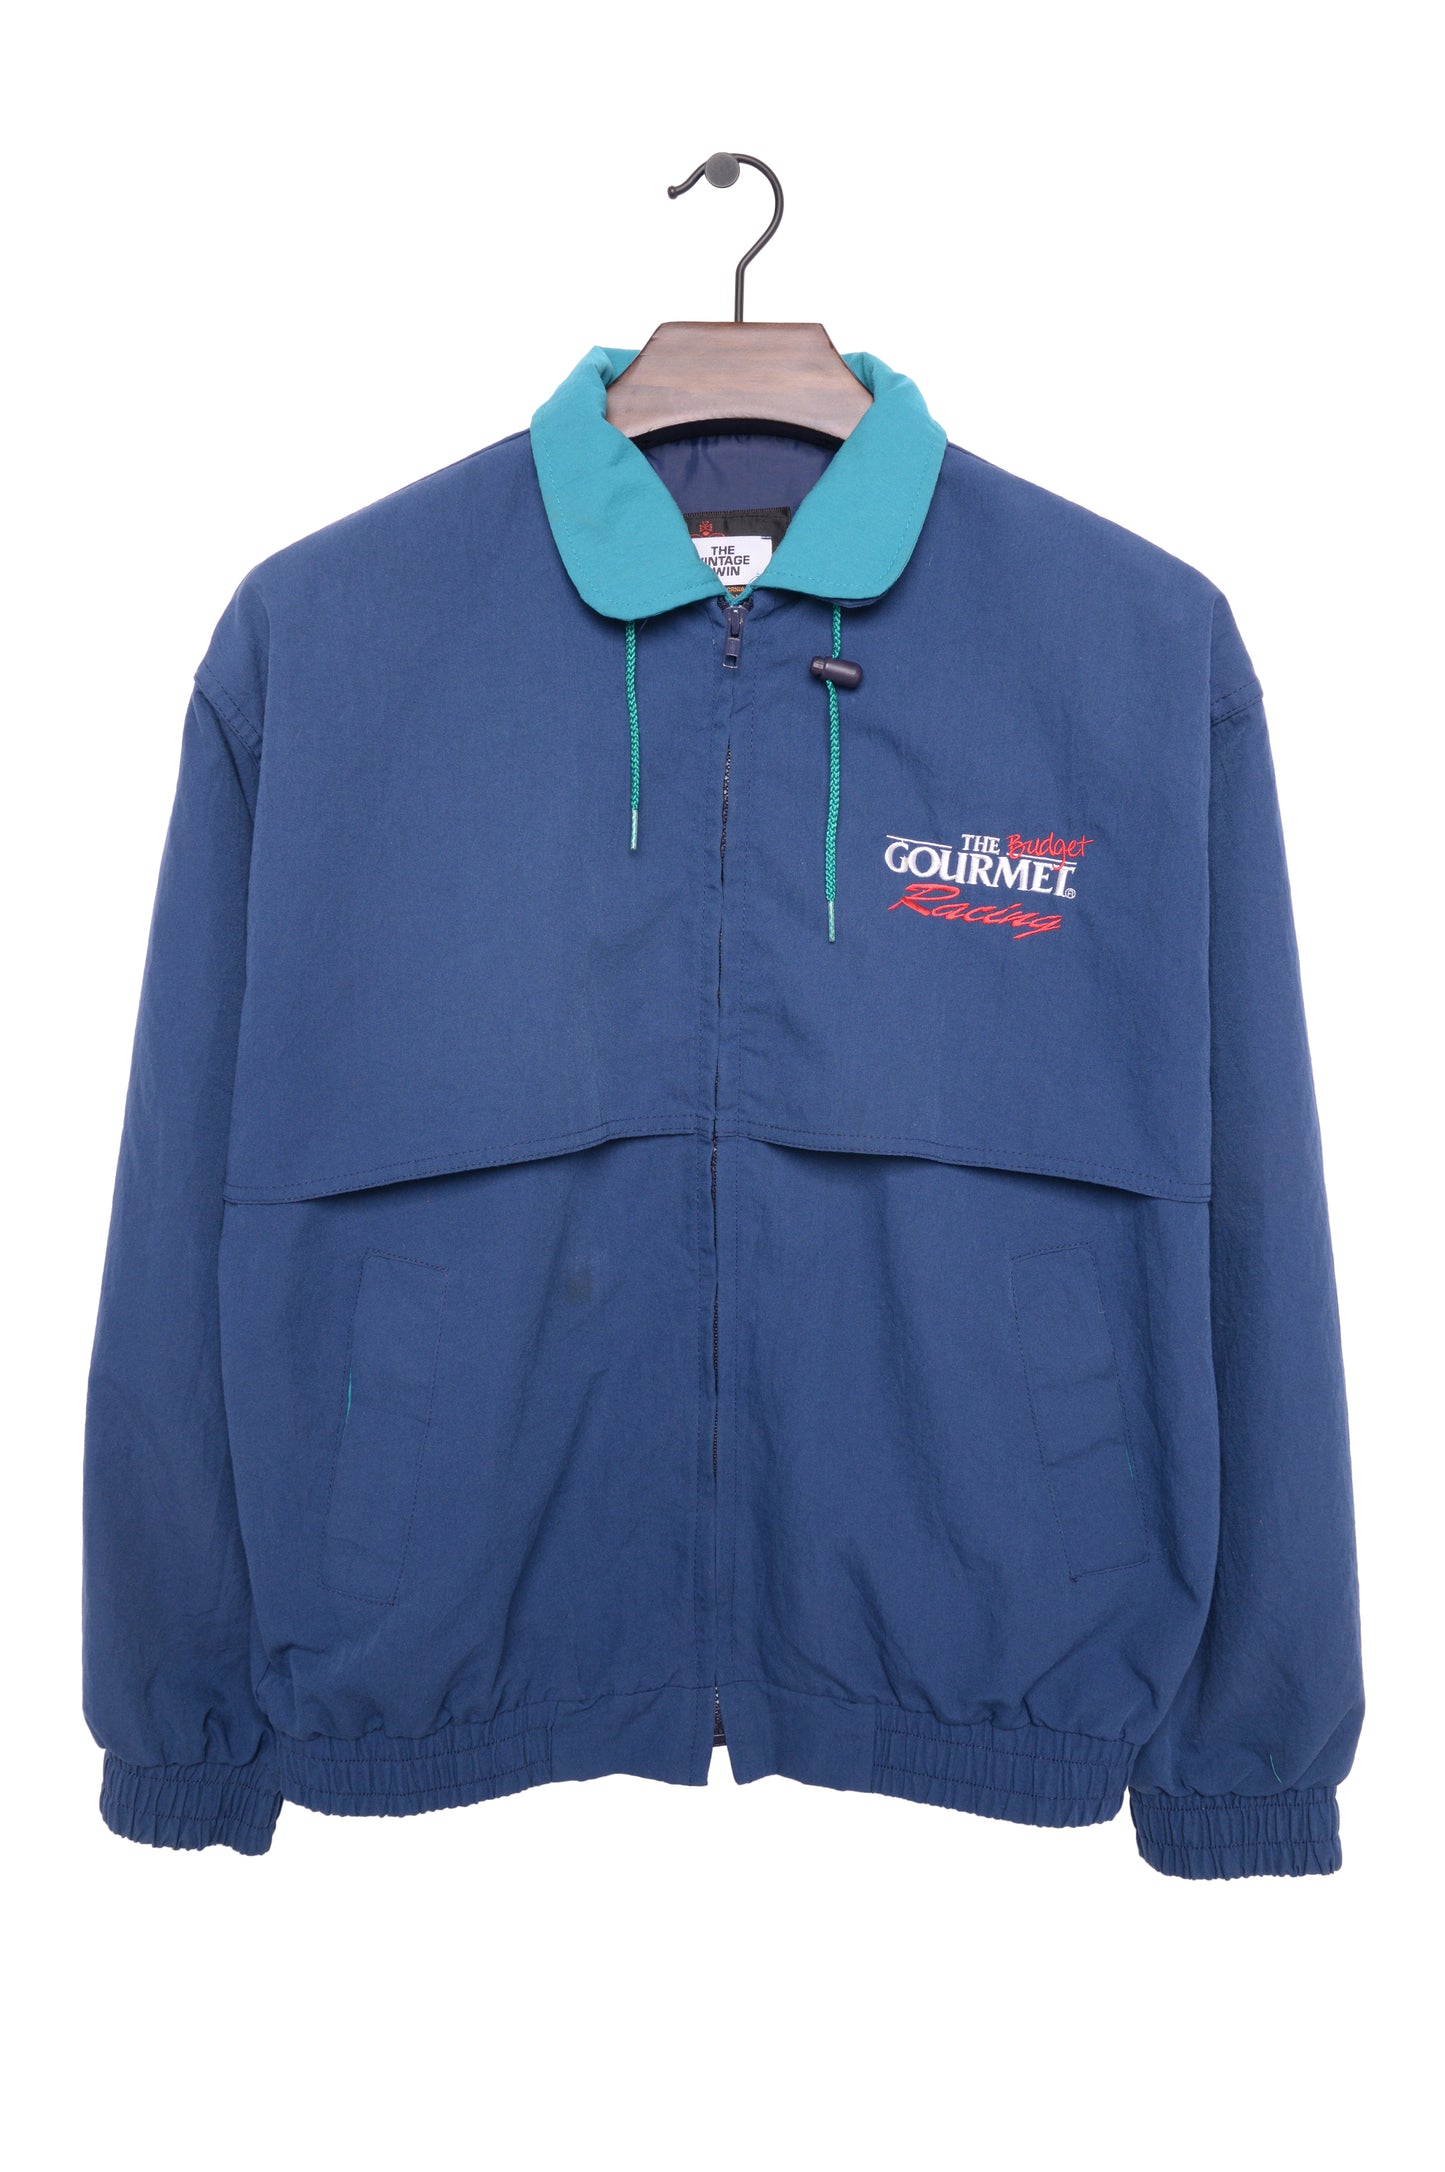 1990s Gourmet Racing Jacket USA